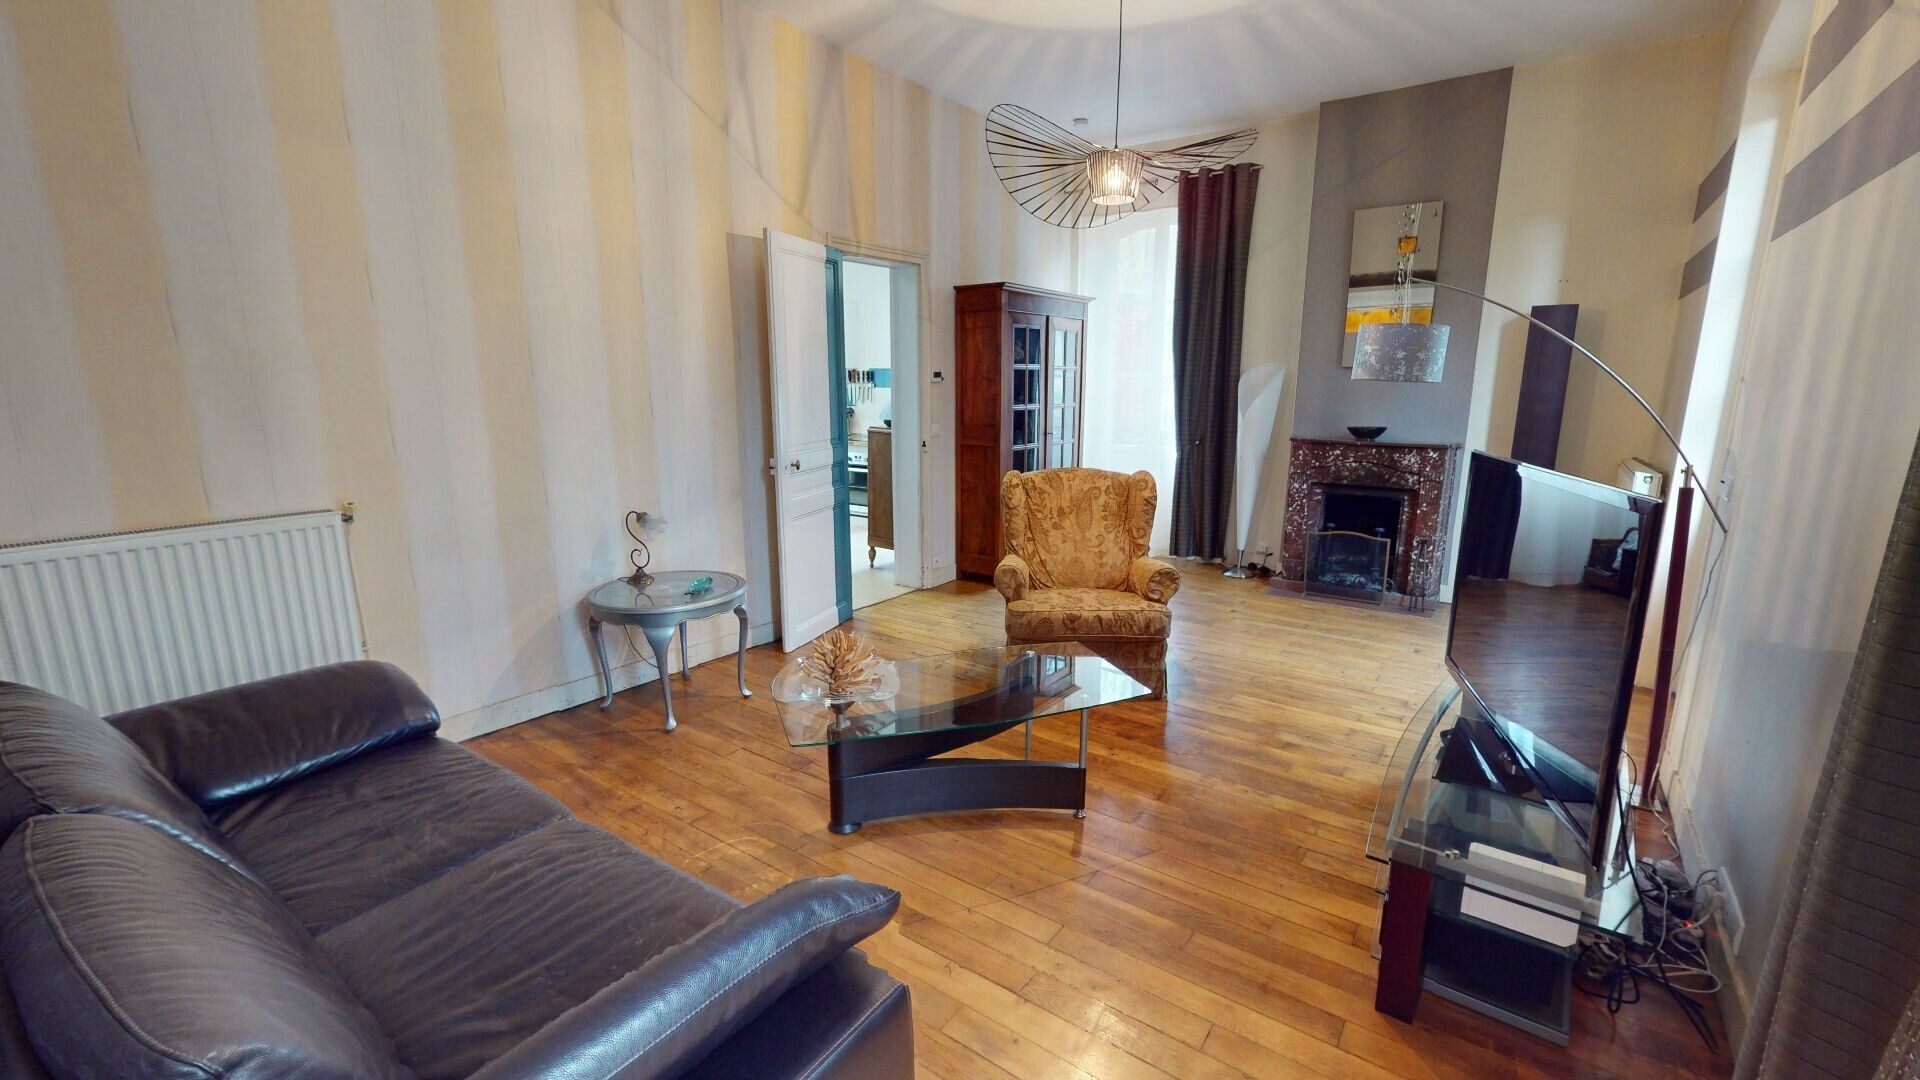 Maison à vendre 6 170m2 à Vernou-la-Celle-sur-Seine vignette-6